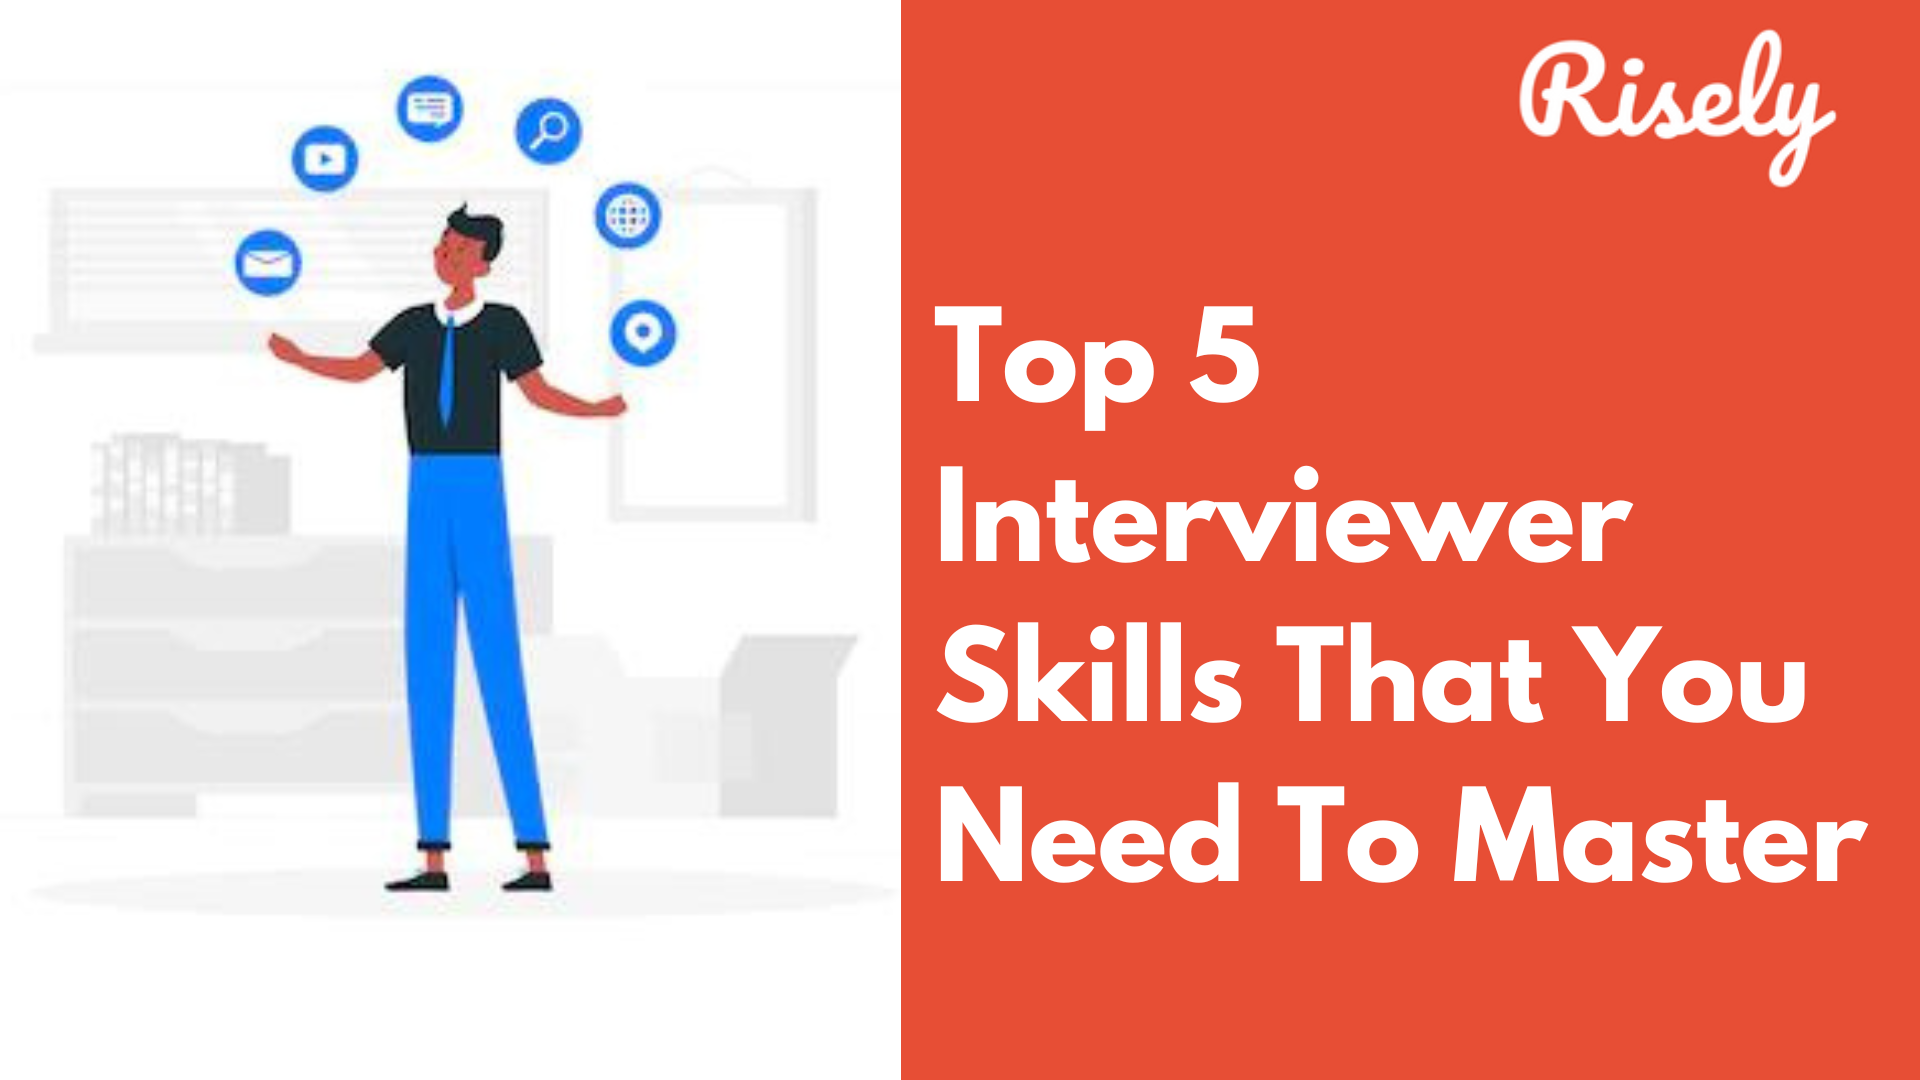 Interviewer skills